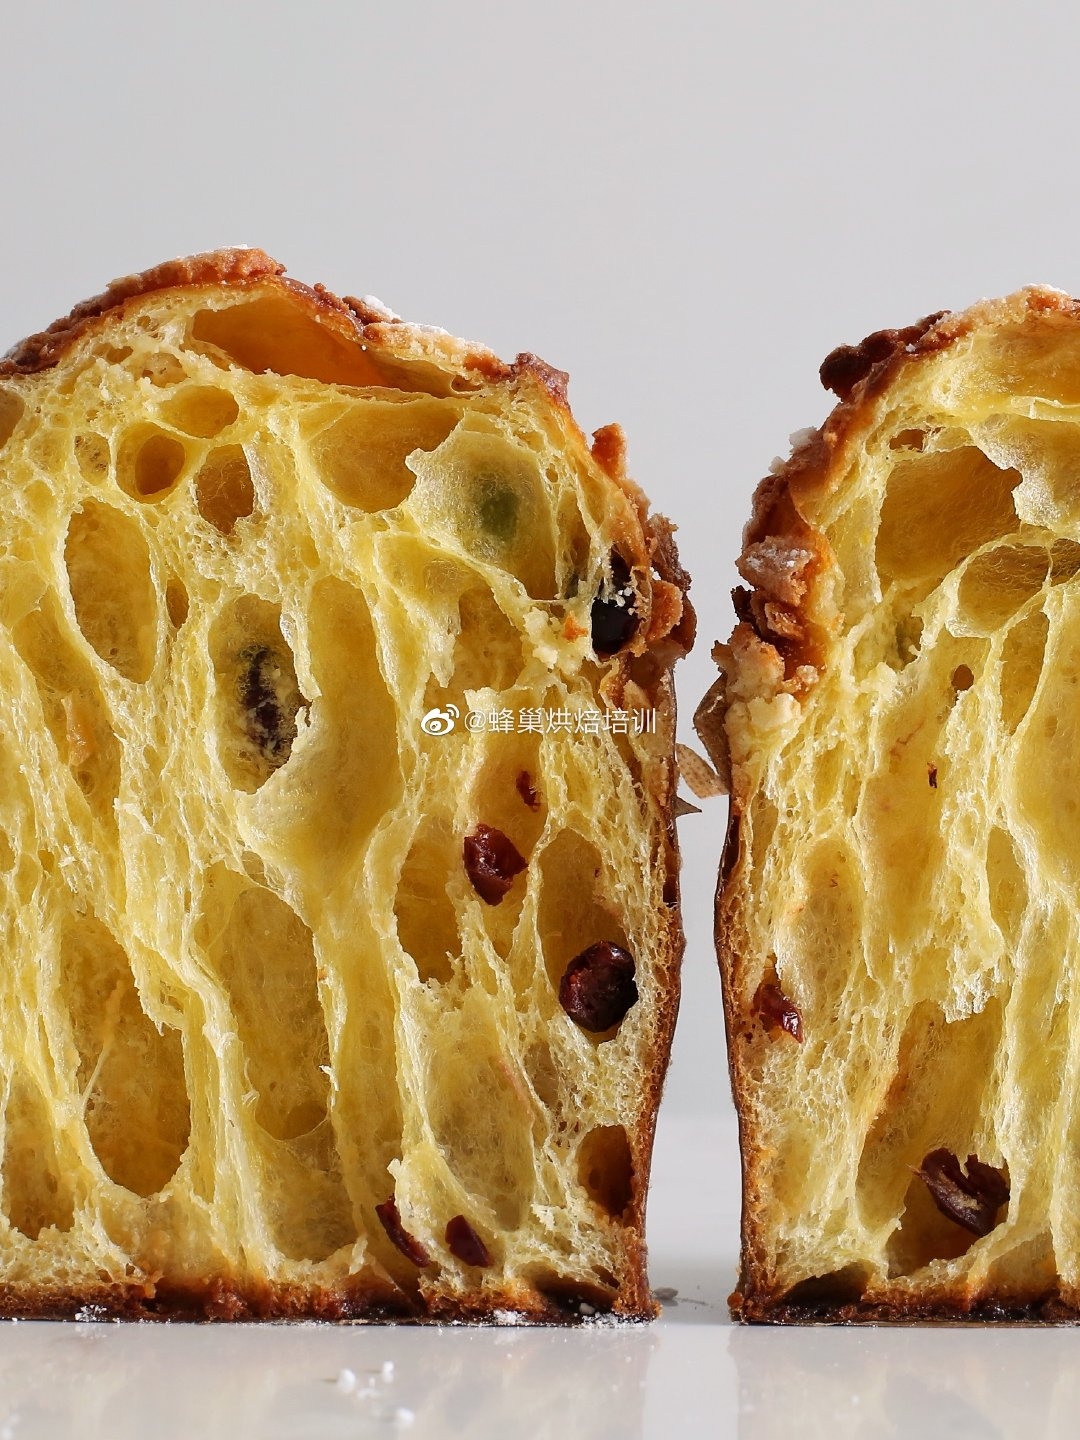 潘娜托尼Panettone意大利水果面包圣诞面包